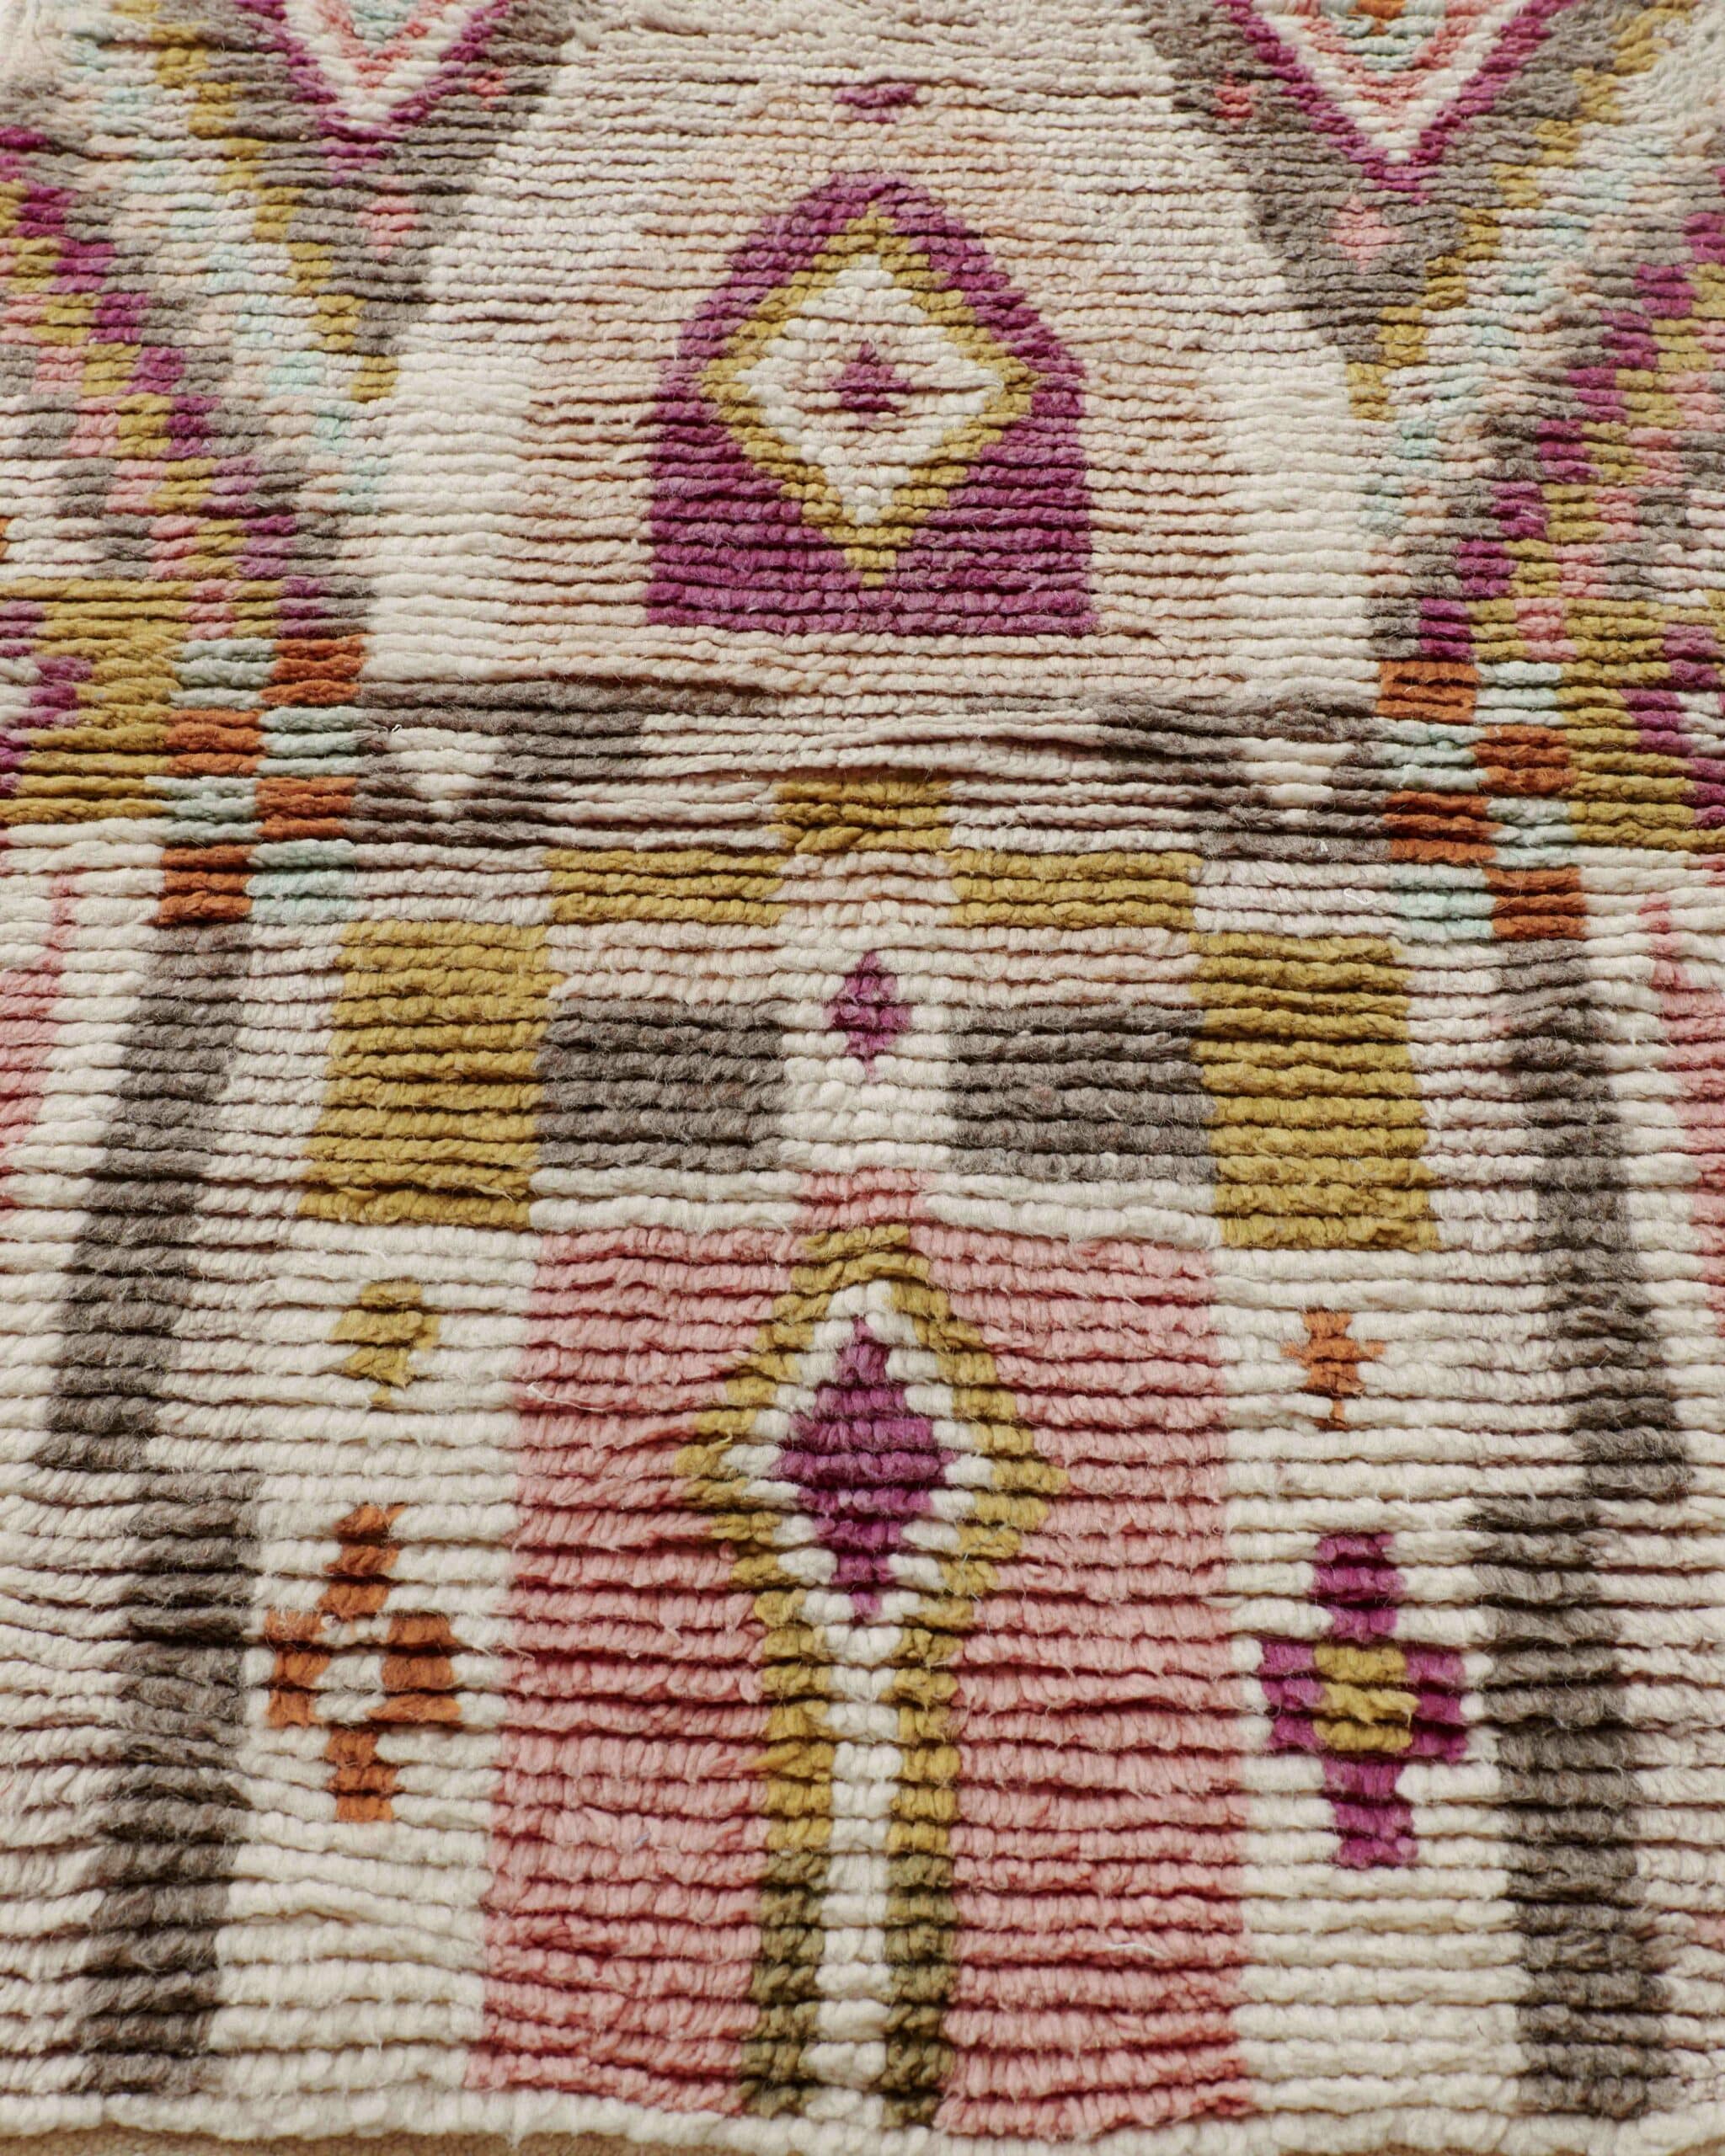 Small-sized Boujaad rug with a gate shape, gate shape